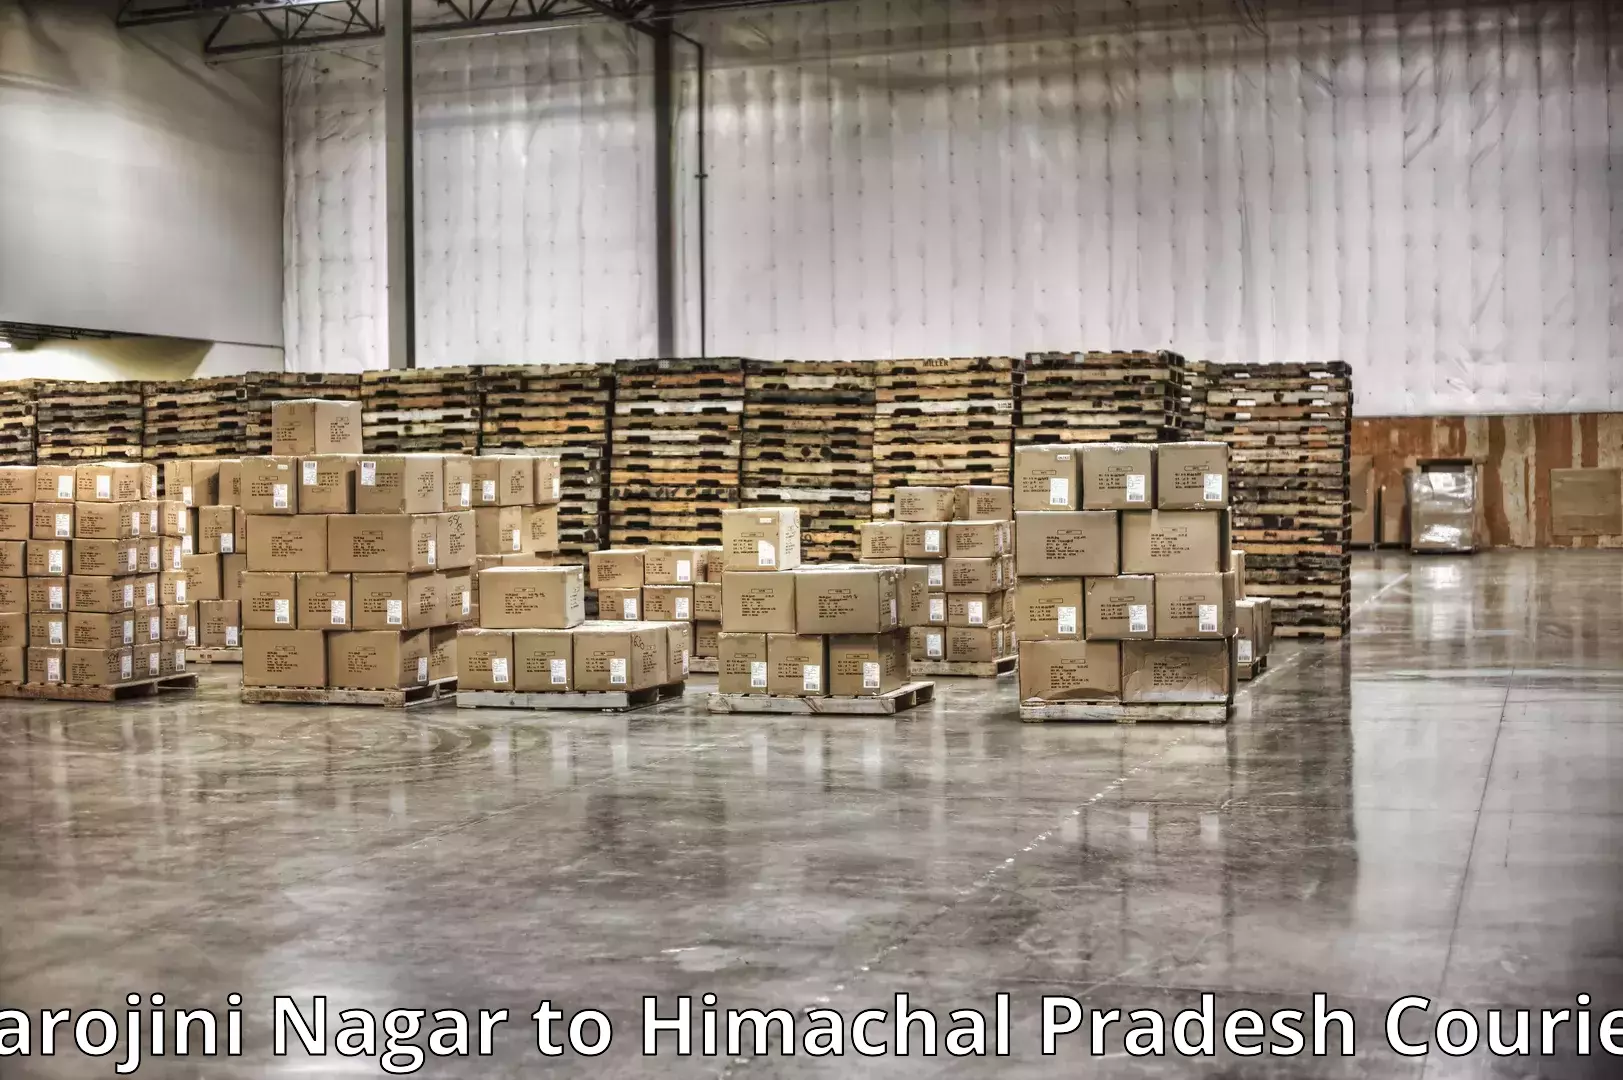 Furniture transport professionals Sarojini Nagar to Nahan